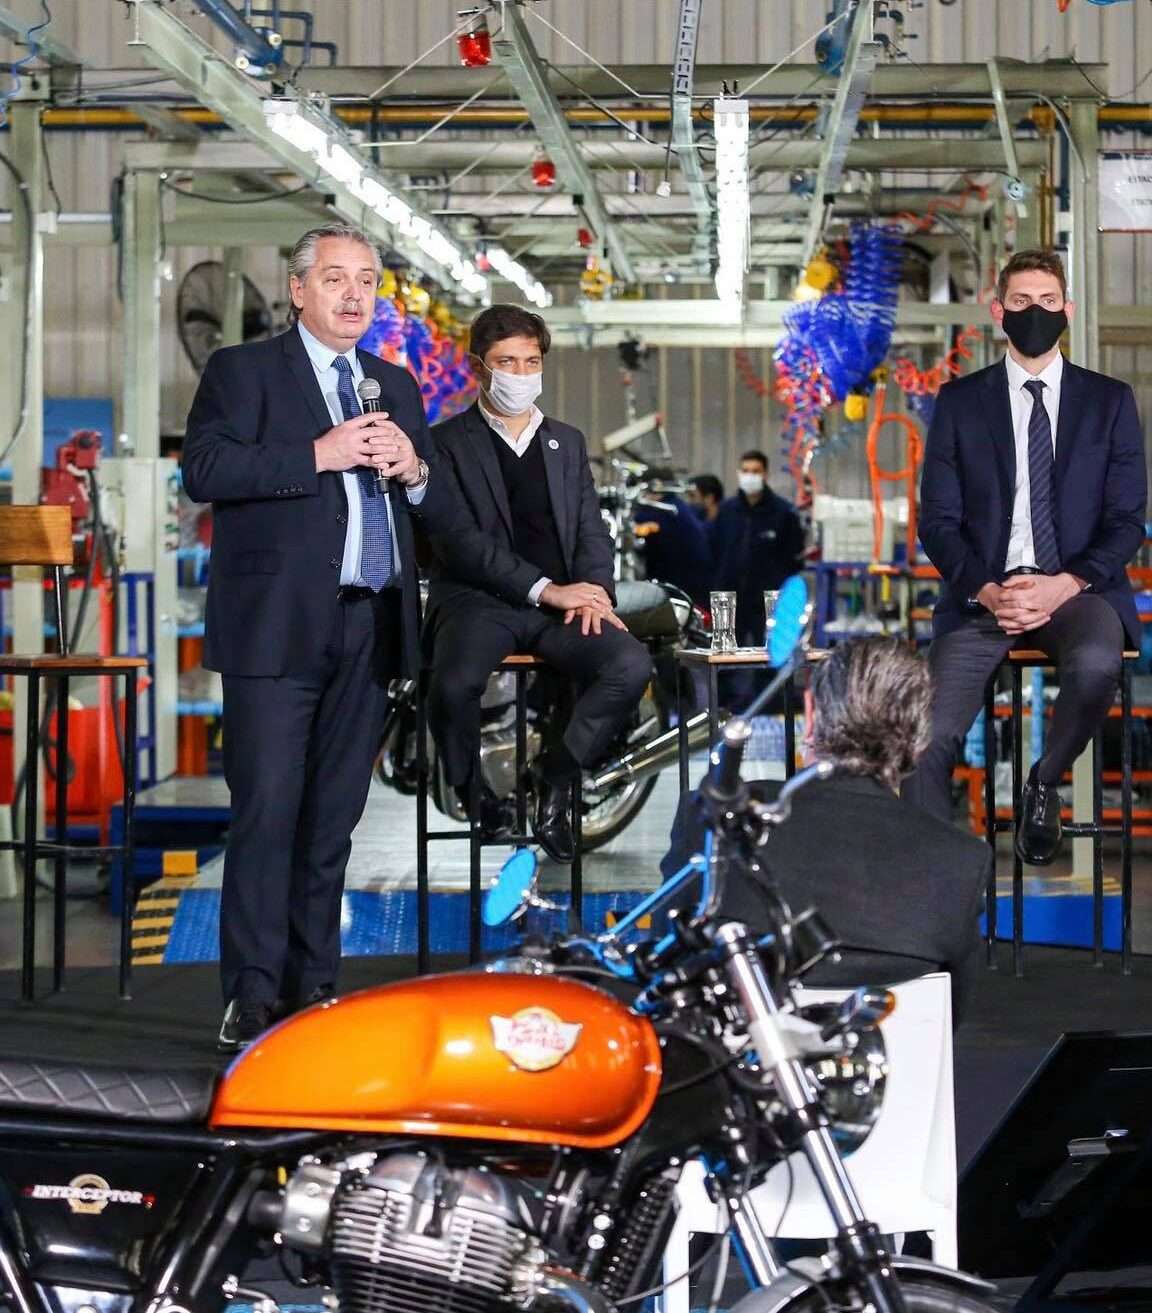 El Gobierno anunció créditos blandos para la de compra motos